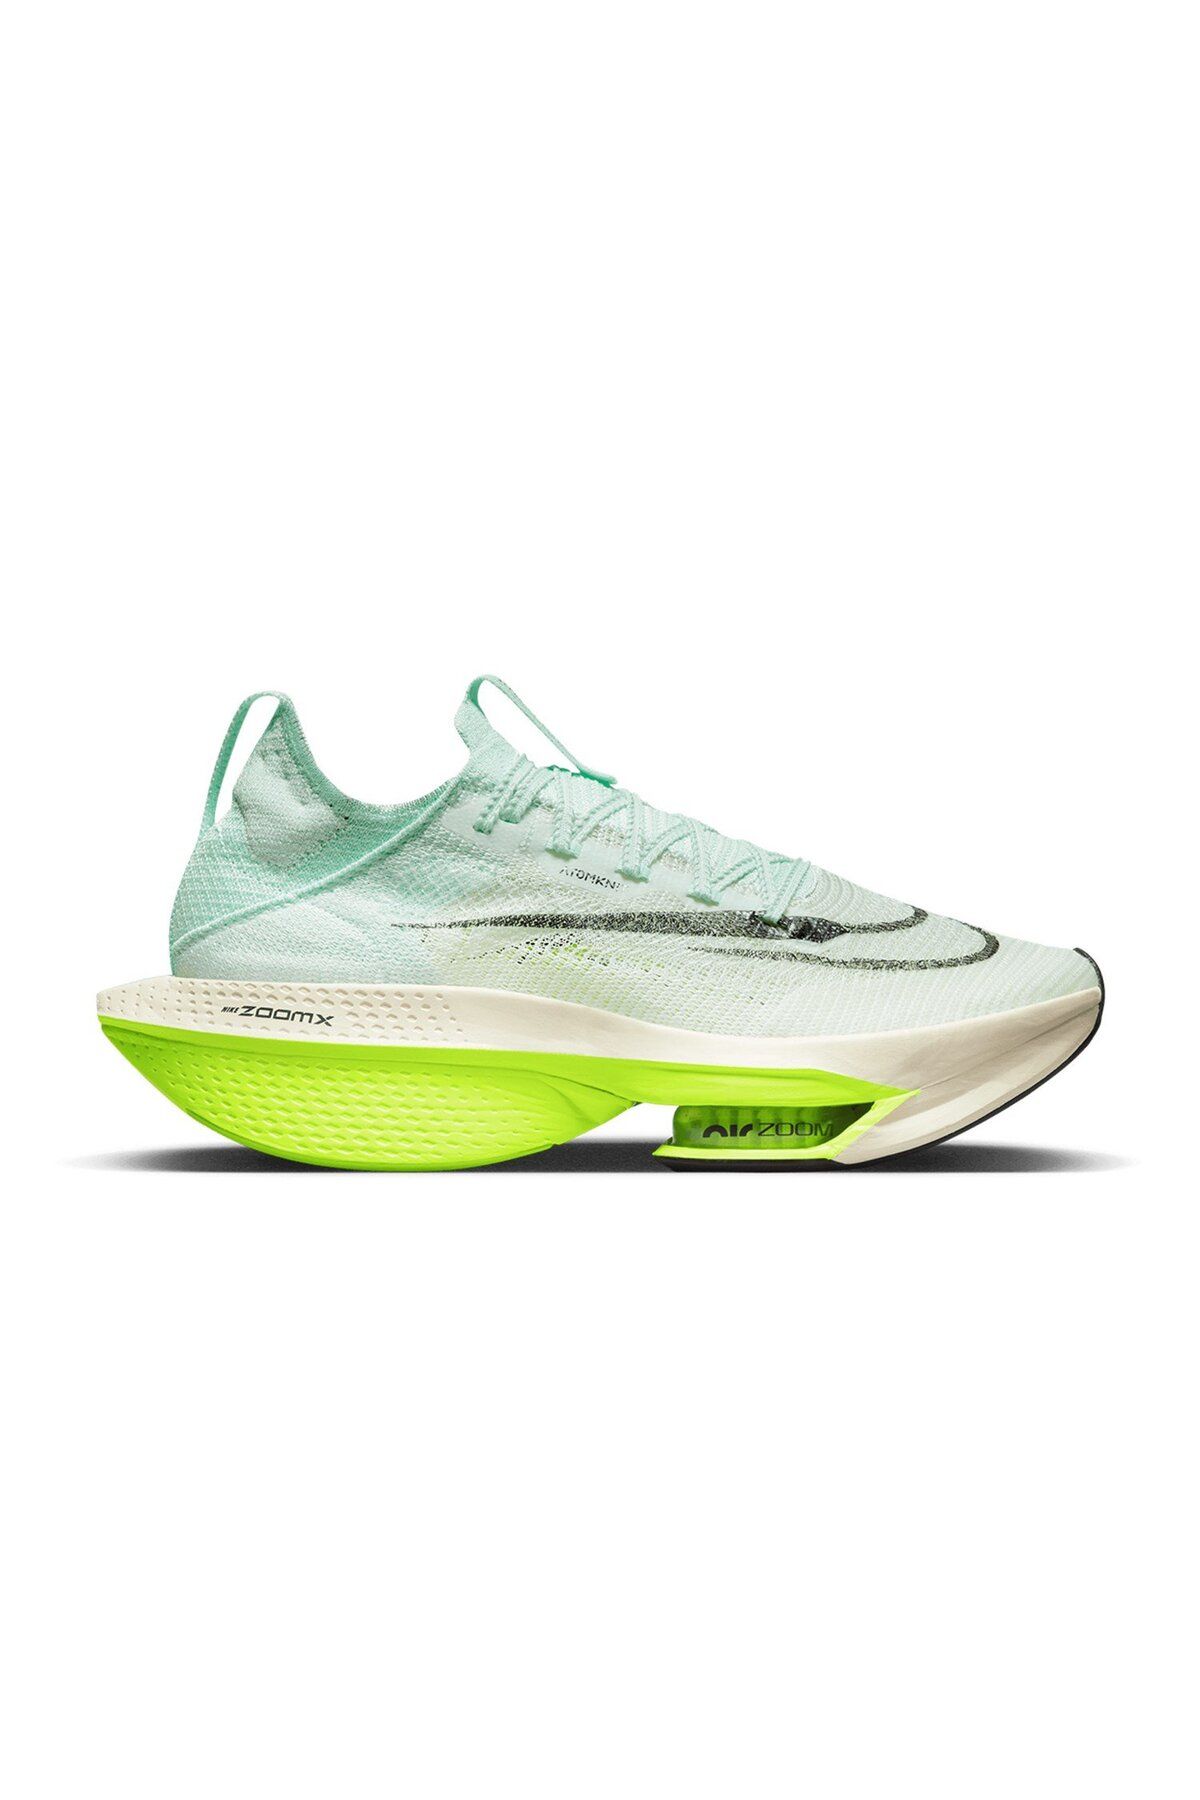 Nike Air Zoom Alphafly NEXT% 2 Erkek Yol Yarış Ayakkabısı DV9422-300